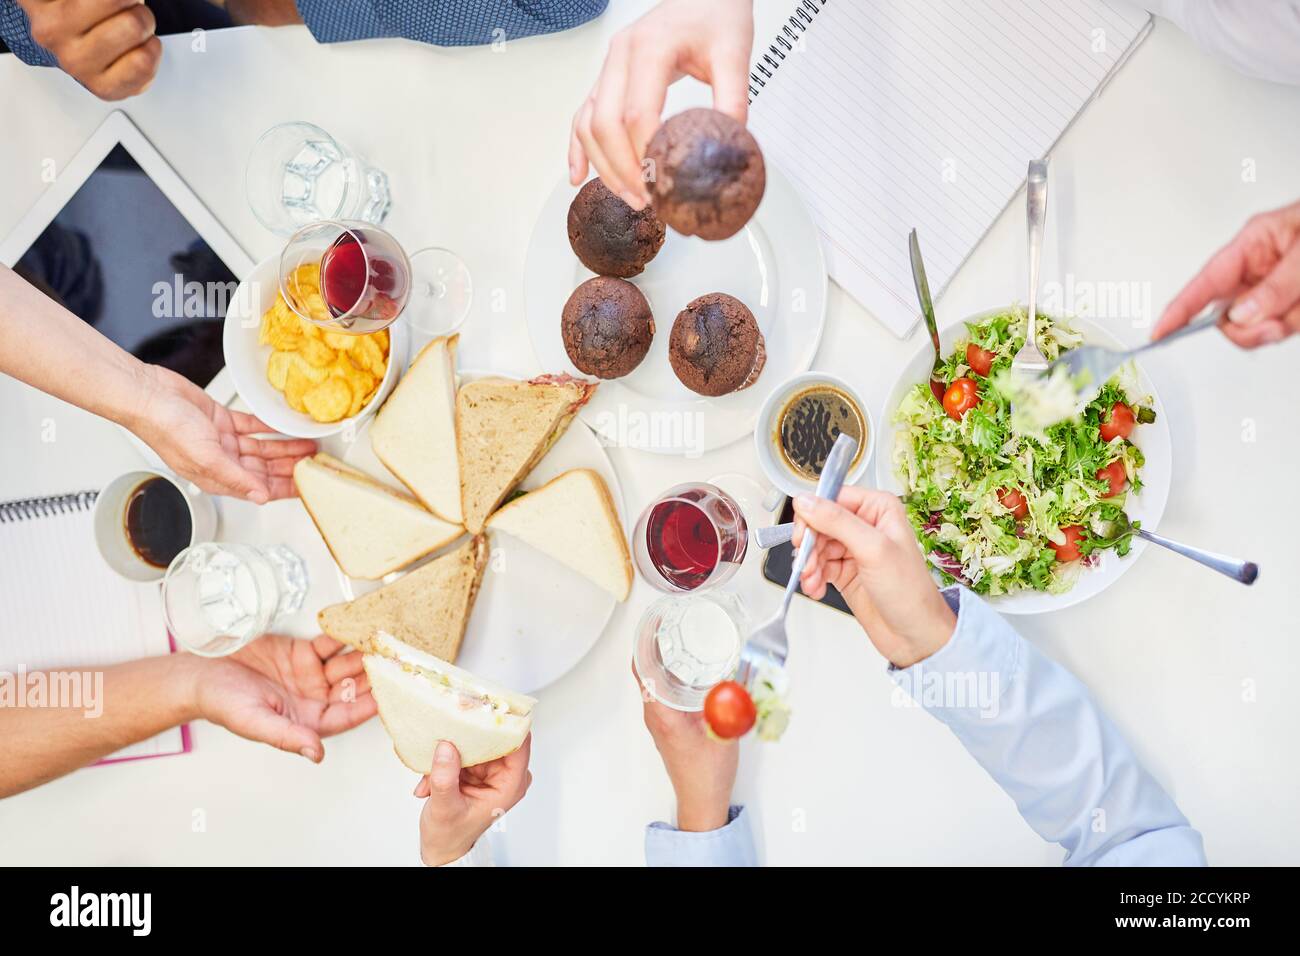 Gli uffici mangiano insieme panini e muffin come uno spuntino durante la pausa pranzo Foto Stock